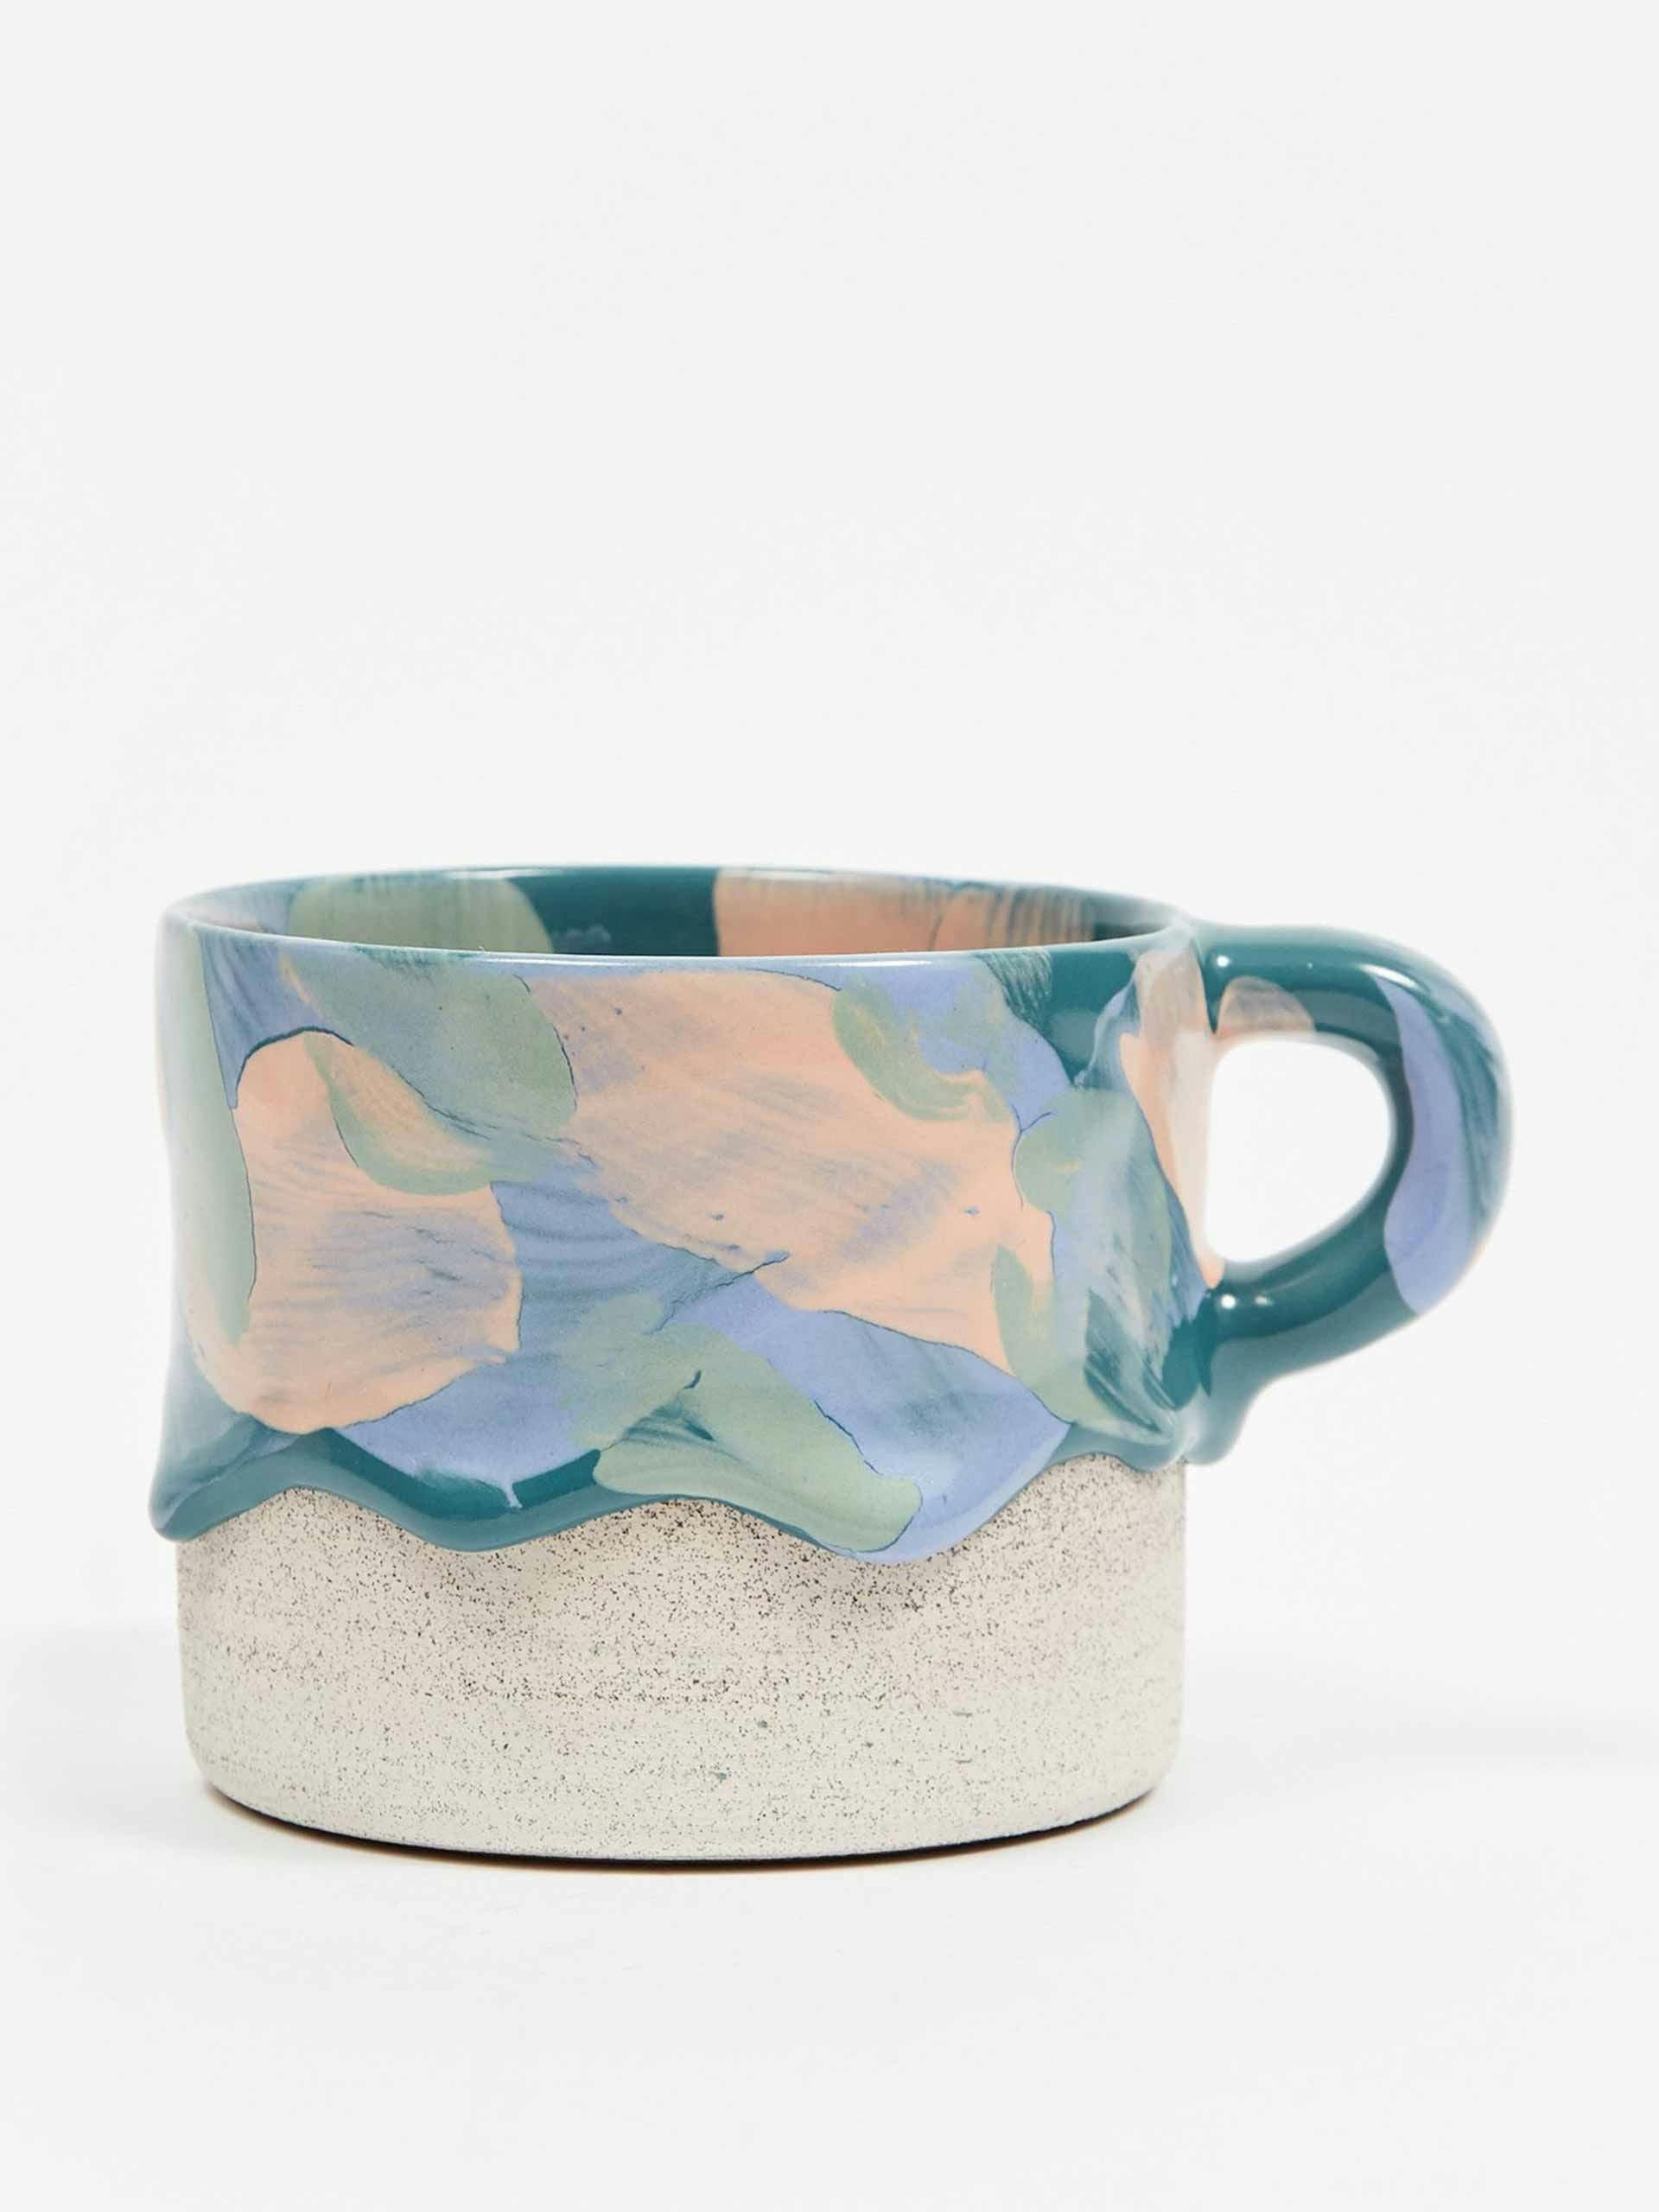 Ceramic drip mug